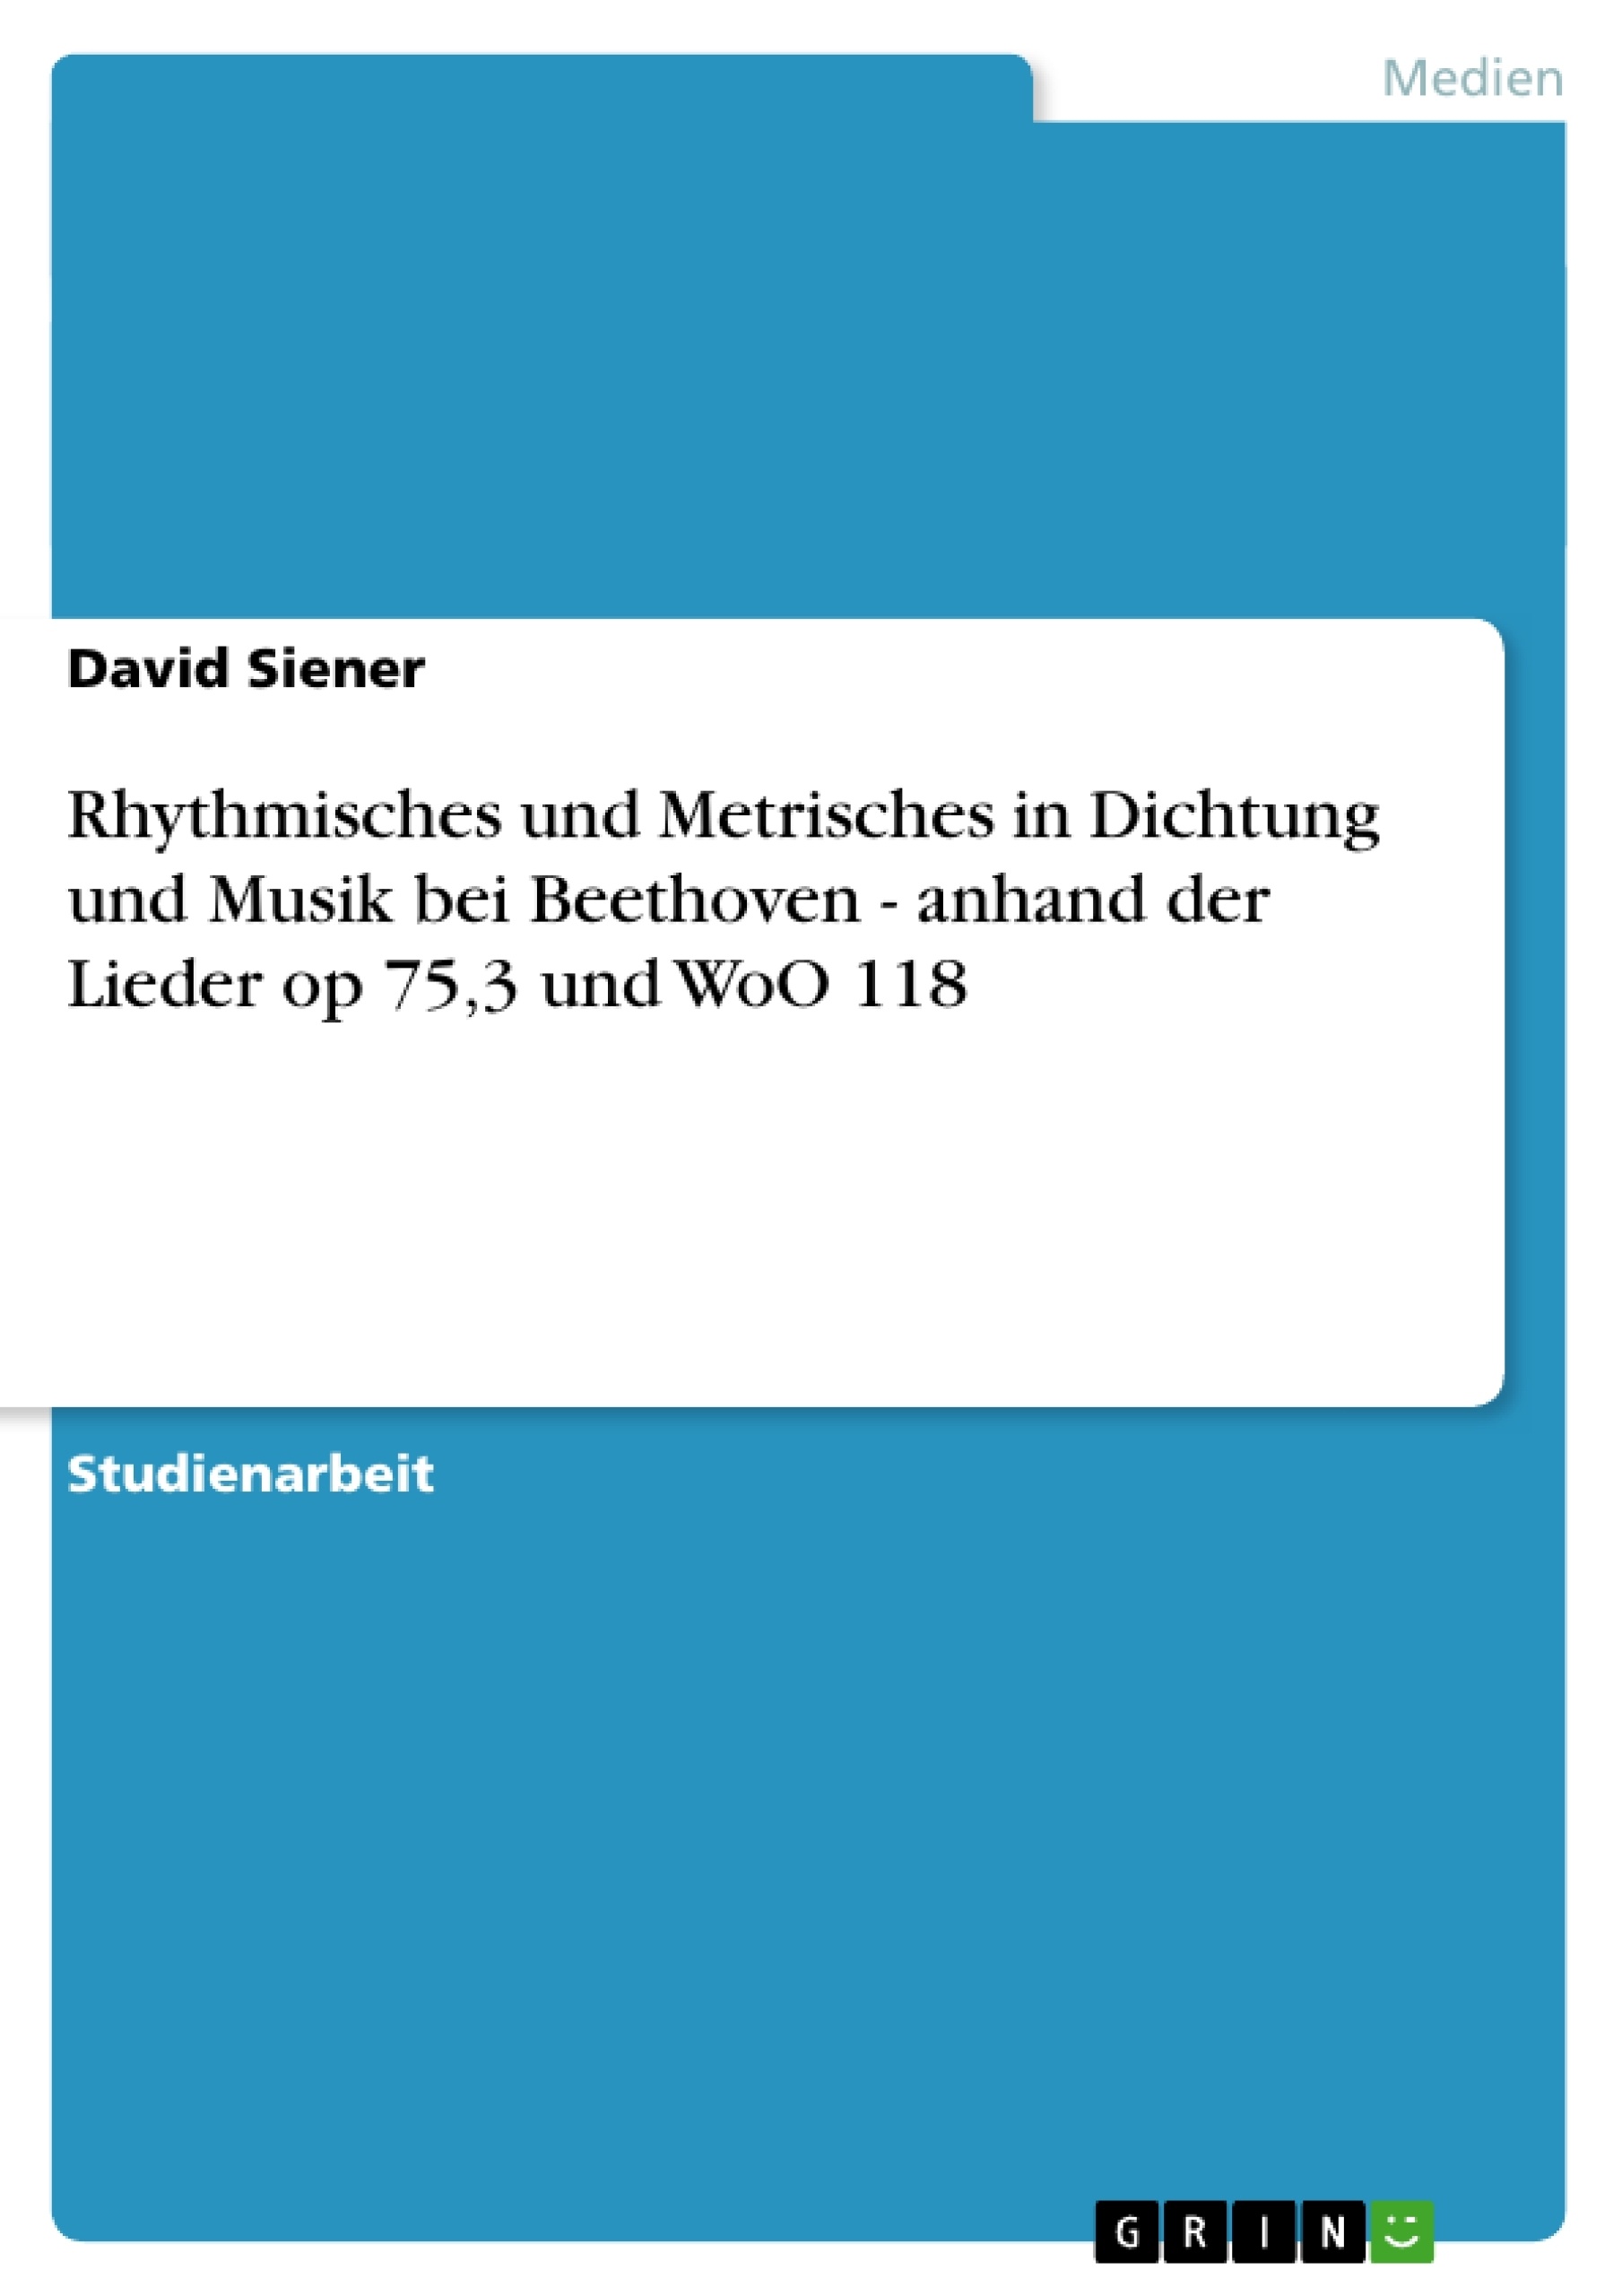 Título: Rhythmisches und Metrisches in Dichtung und Musik bei Beethoven - anhand der Lieder op 75,3 und WoO 118